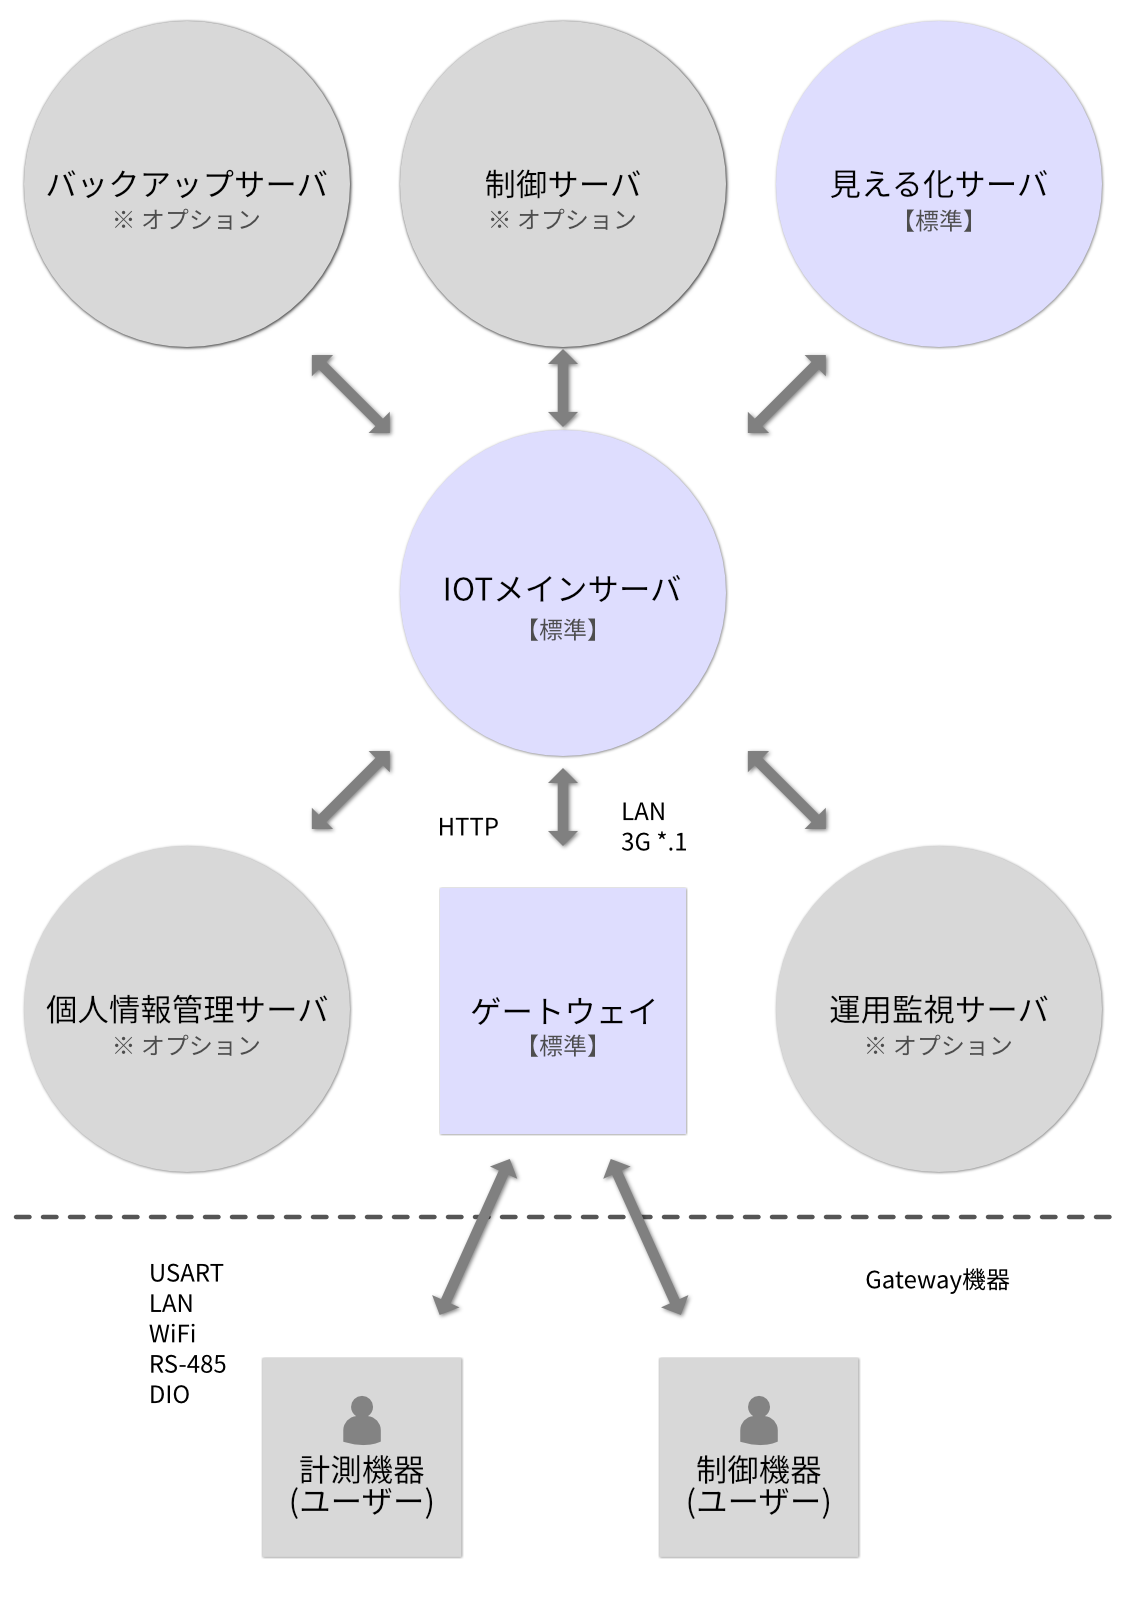 IOT汎用サーバーシステム構成概略図